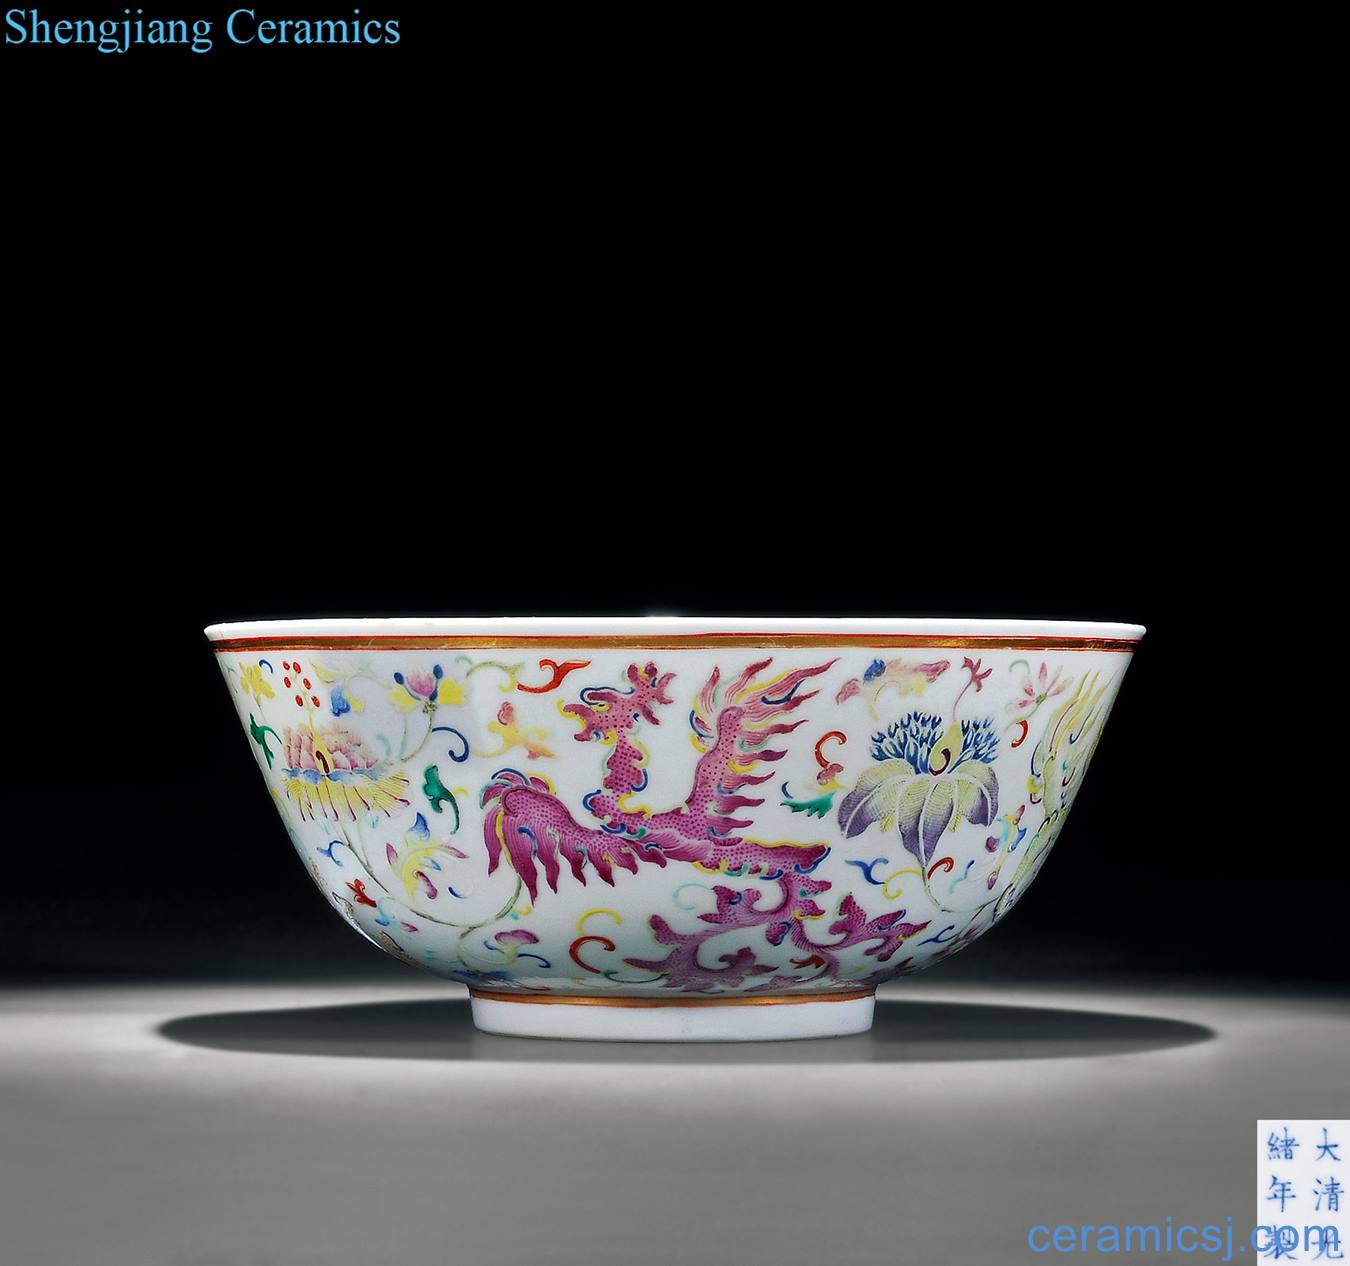 Pastel reign of qing emperor guangxu real talent grain big bowl